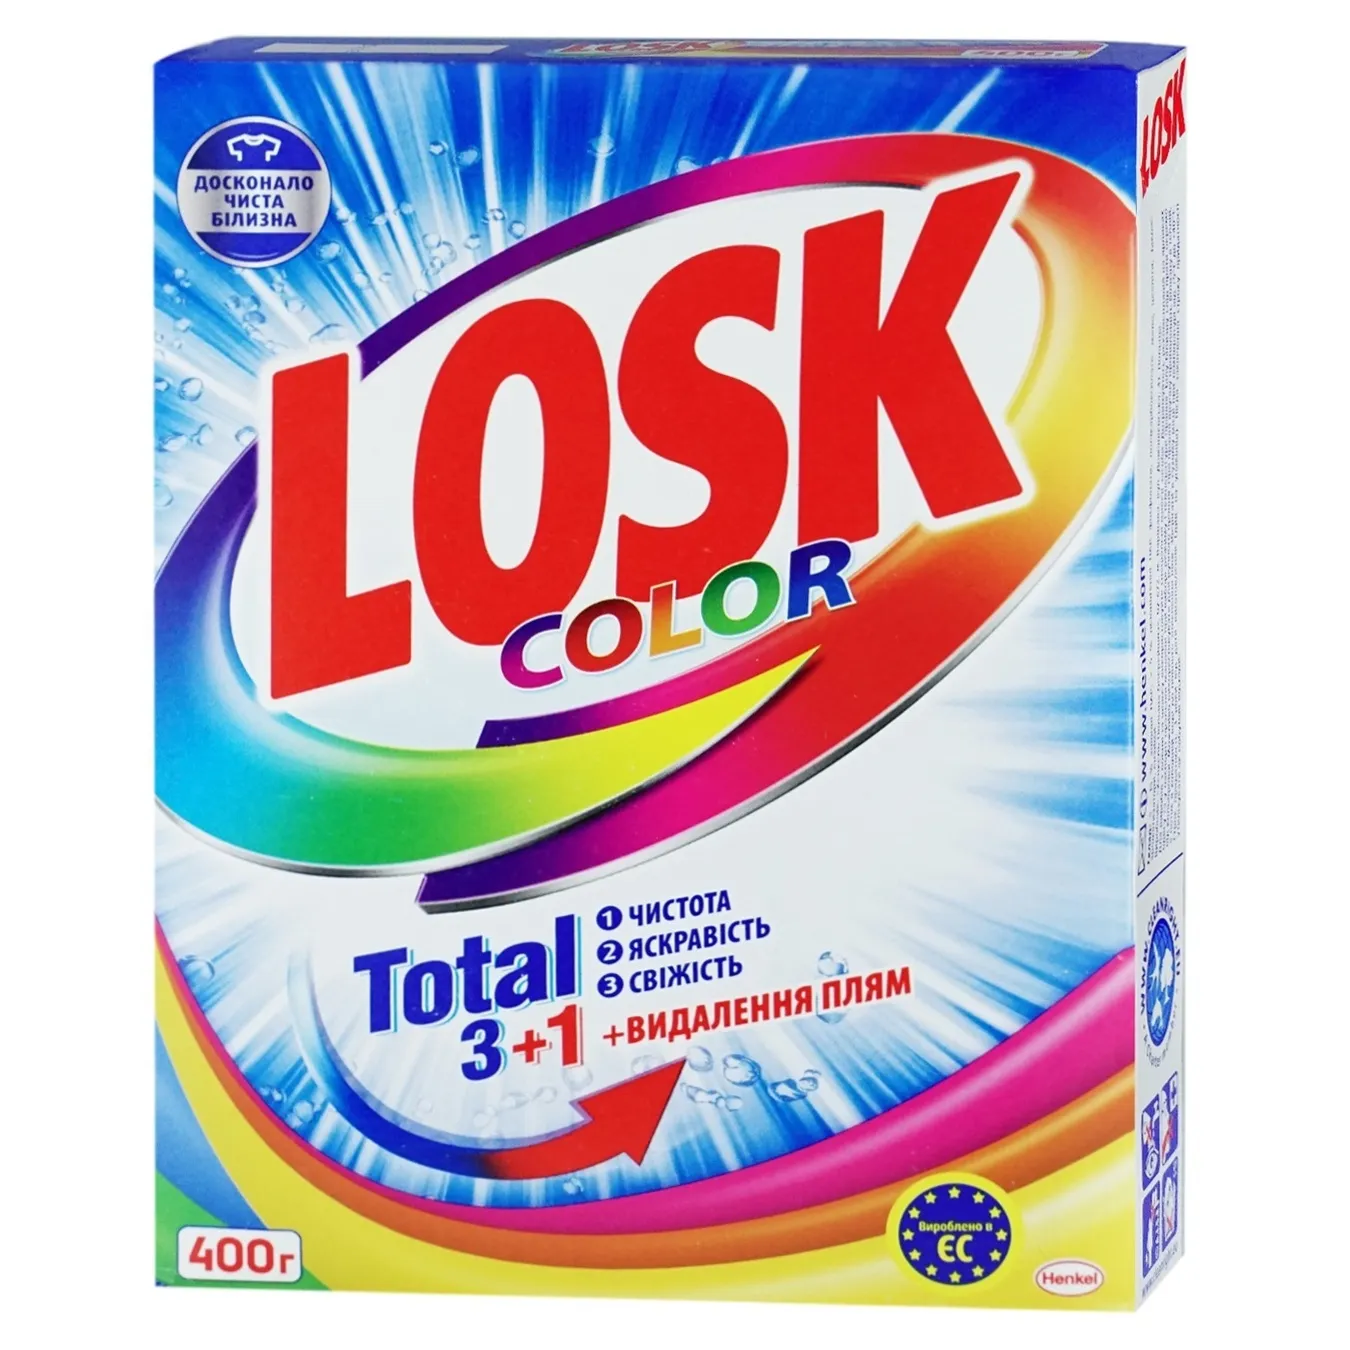 Порошок для прання Losk кольорових речей автомат 3 цикли прання 400г